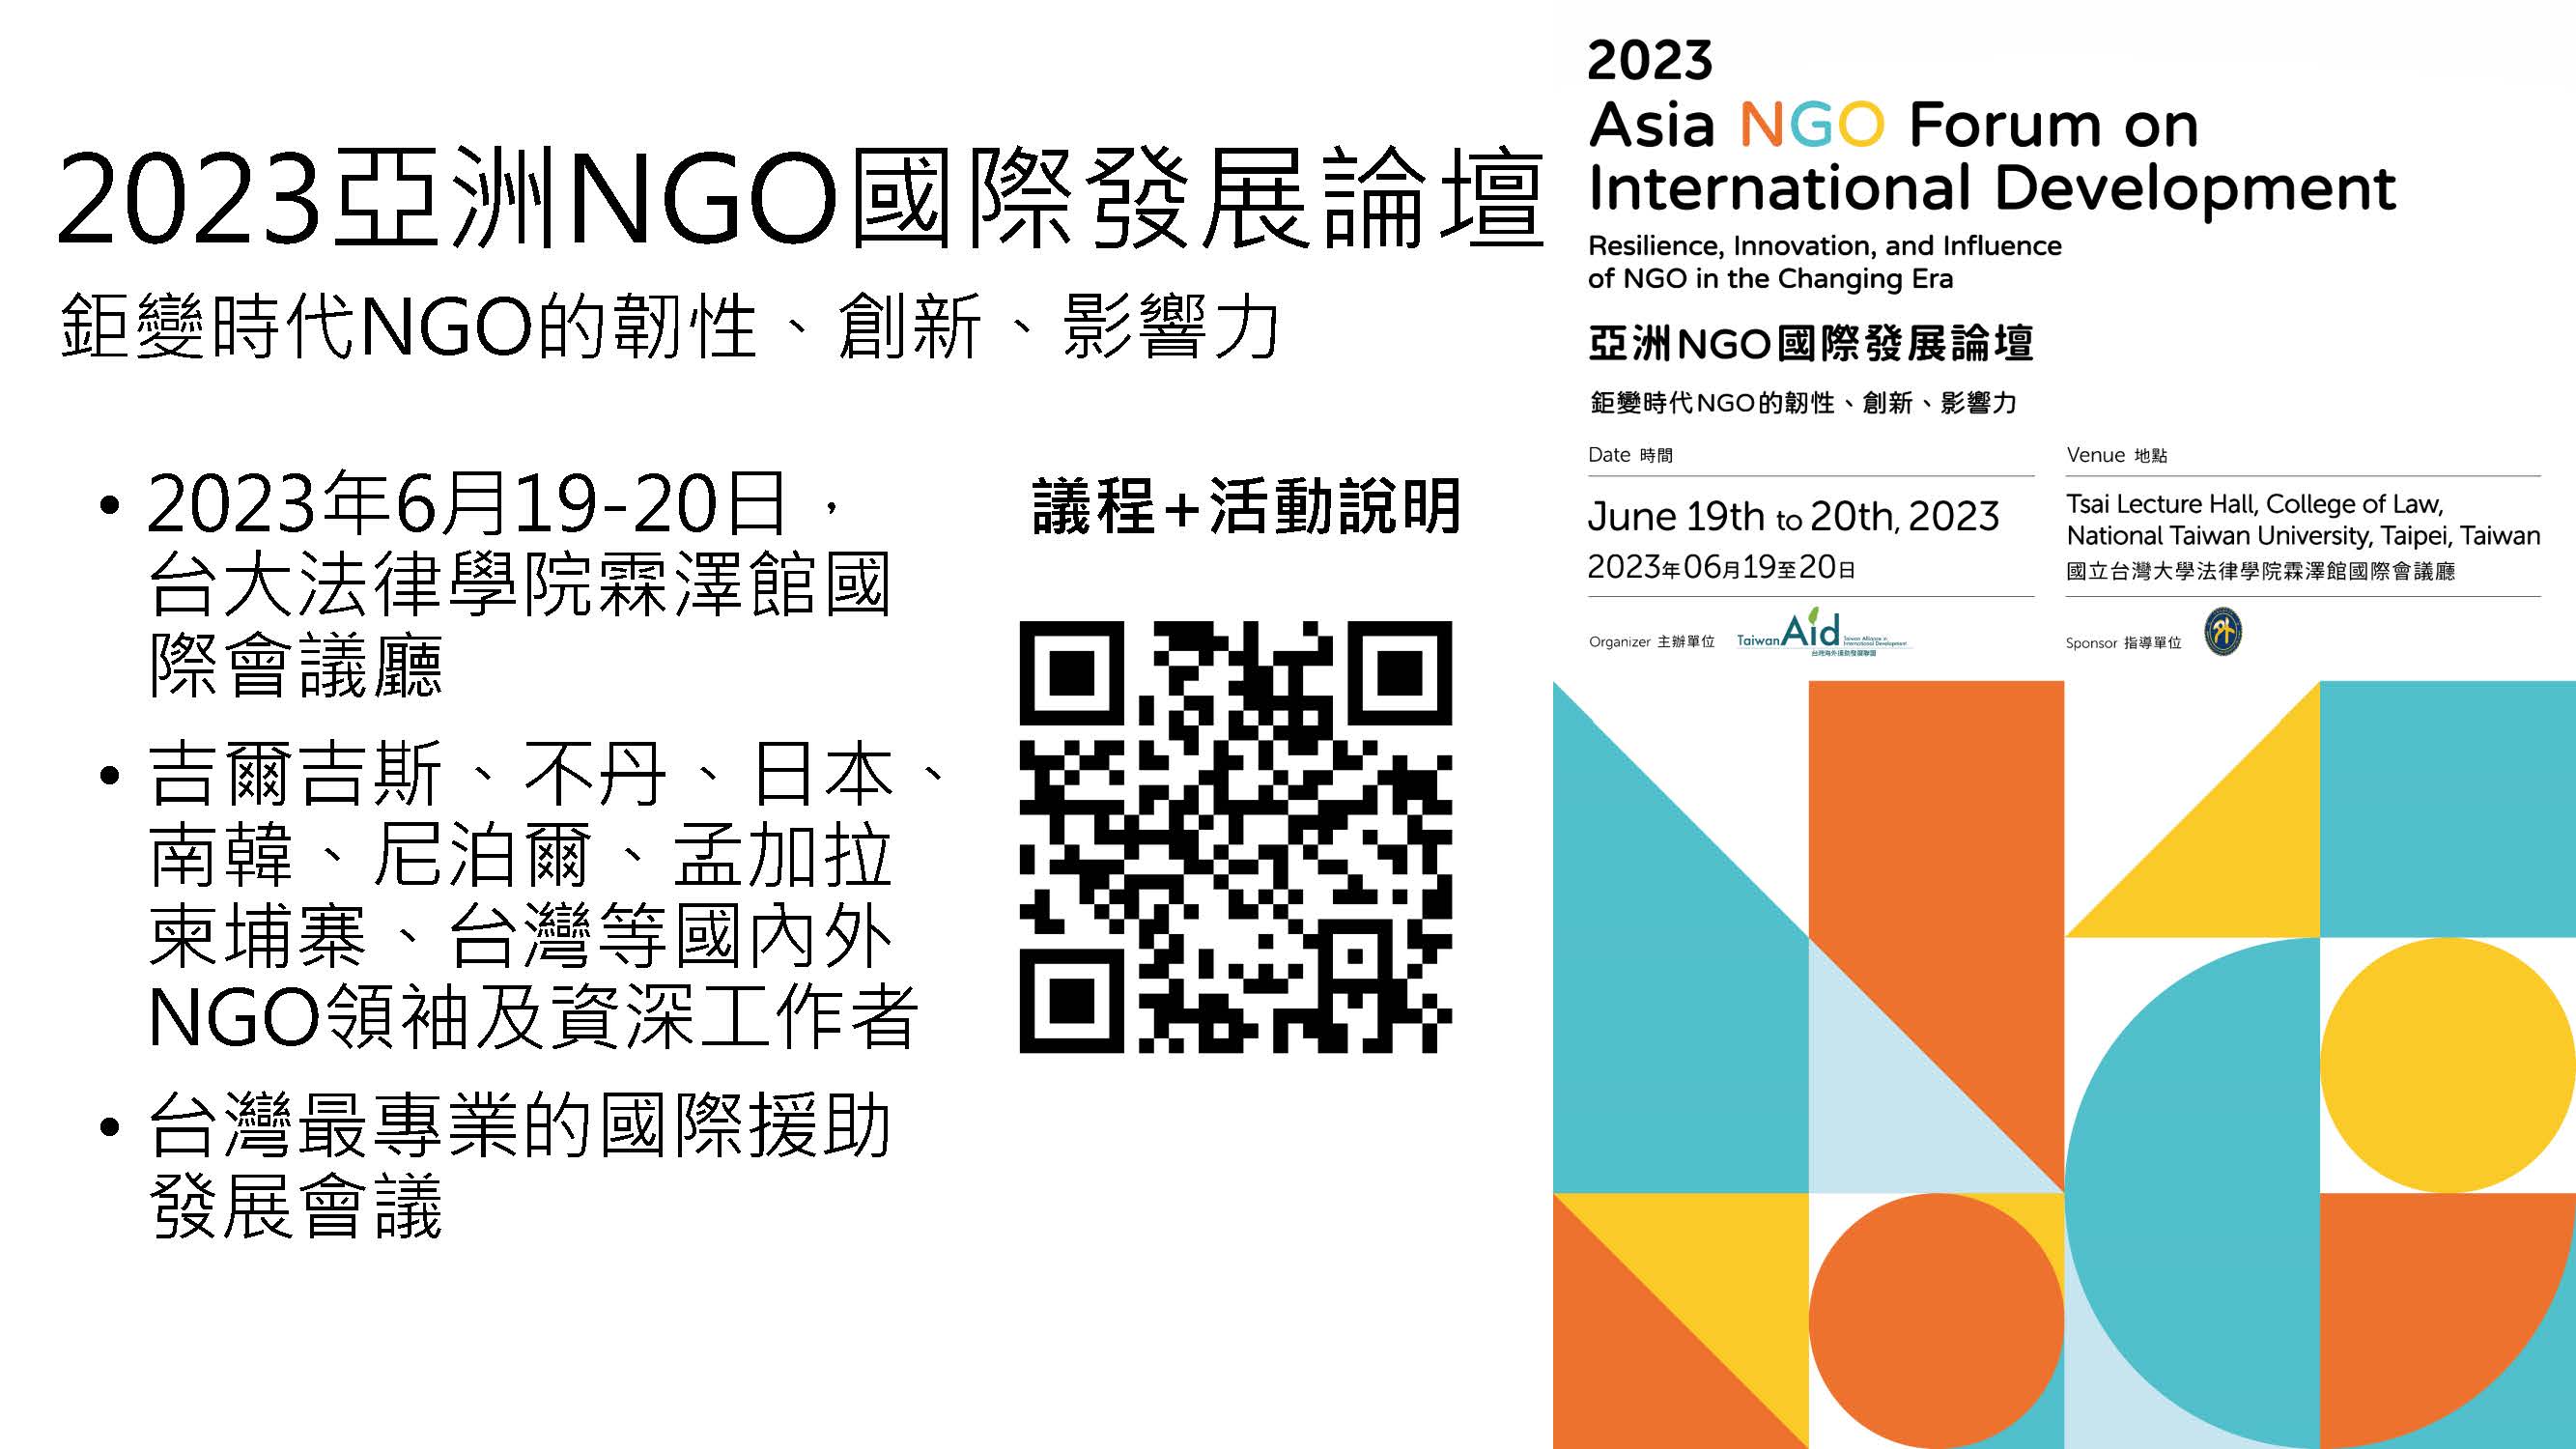 「2023亞洲NGO國際發展論壇」2023 Asia NGO Forum on International Development